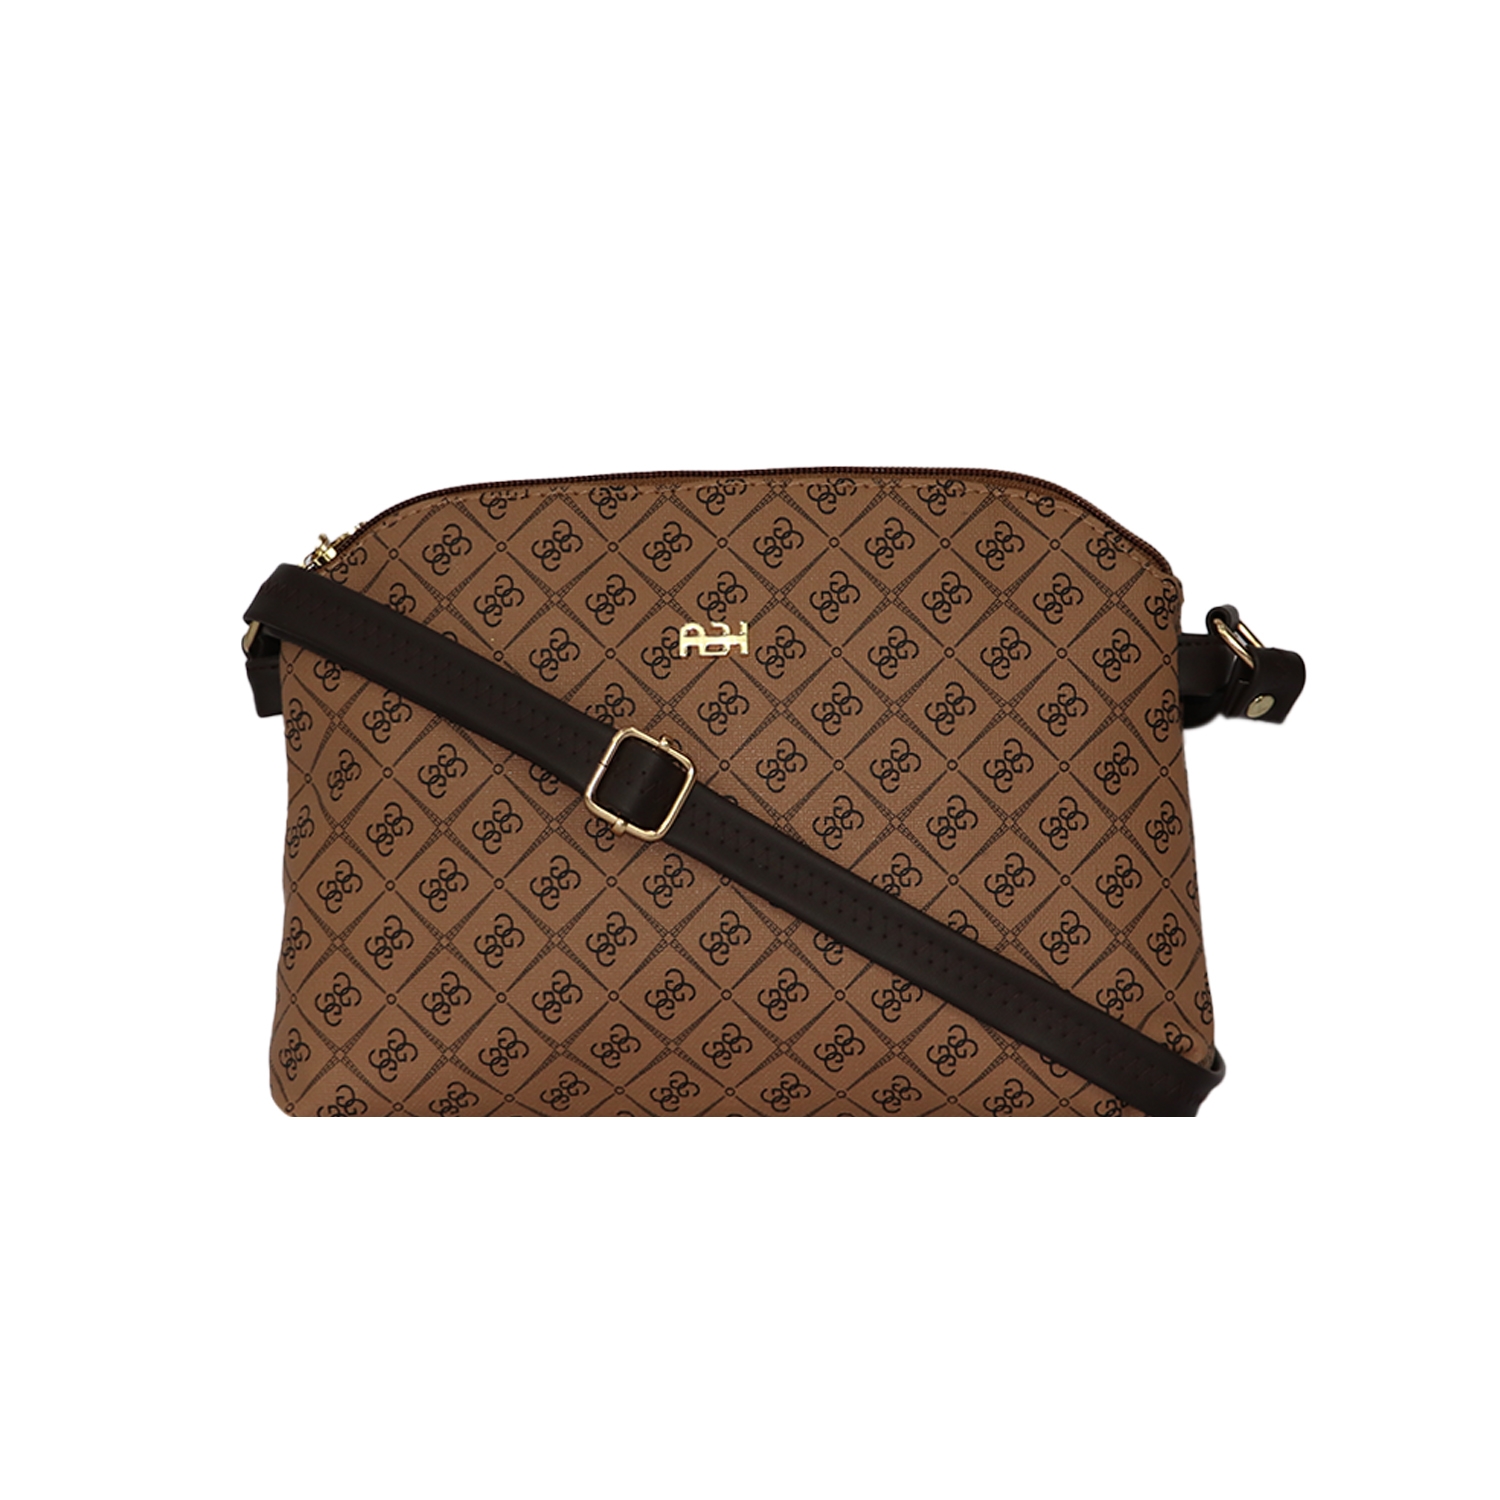 EMM | EMM's Leather Large Brown Sling Bag